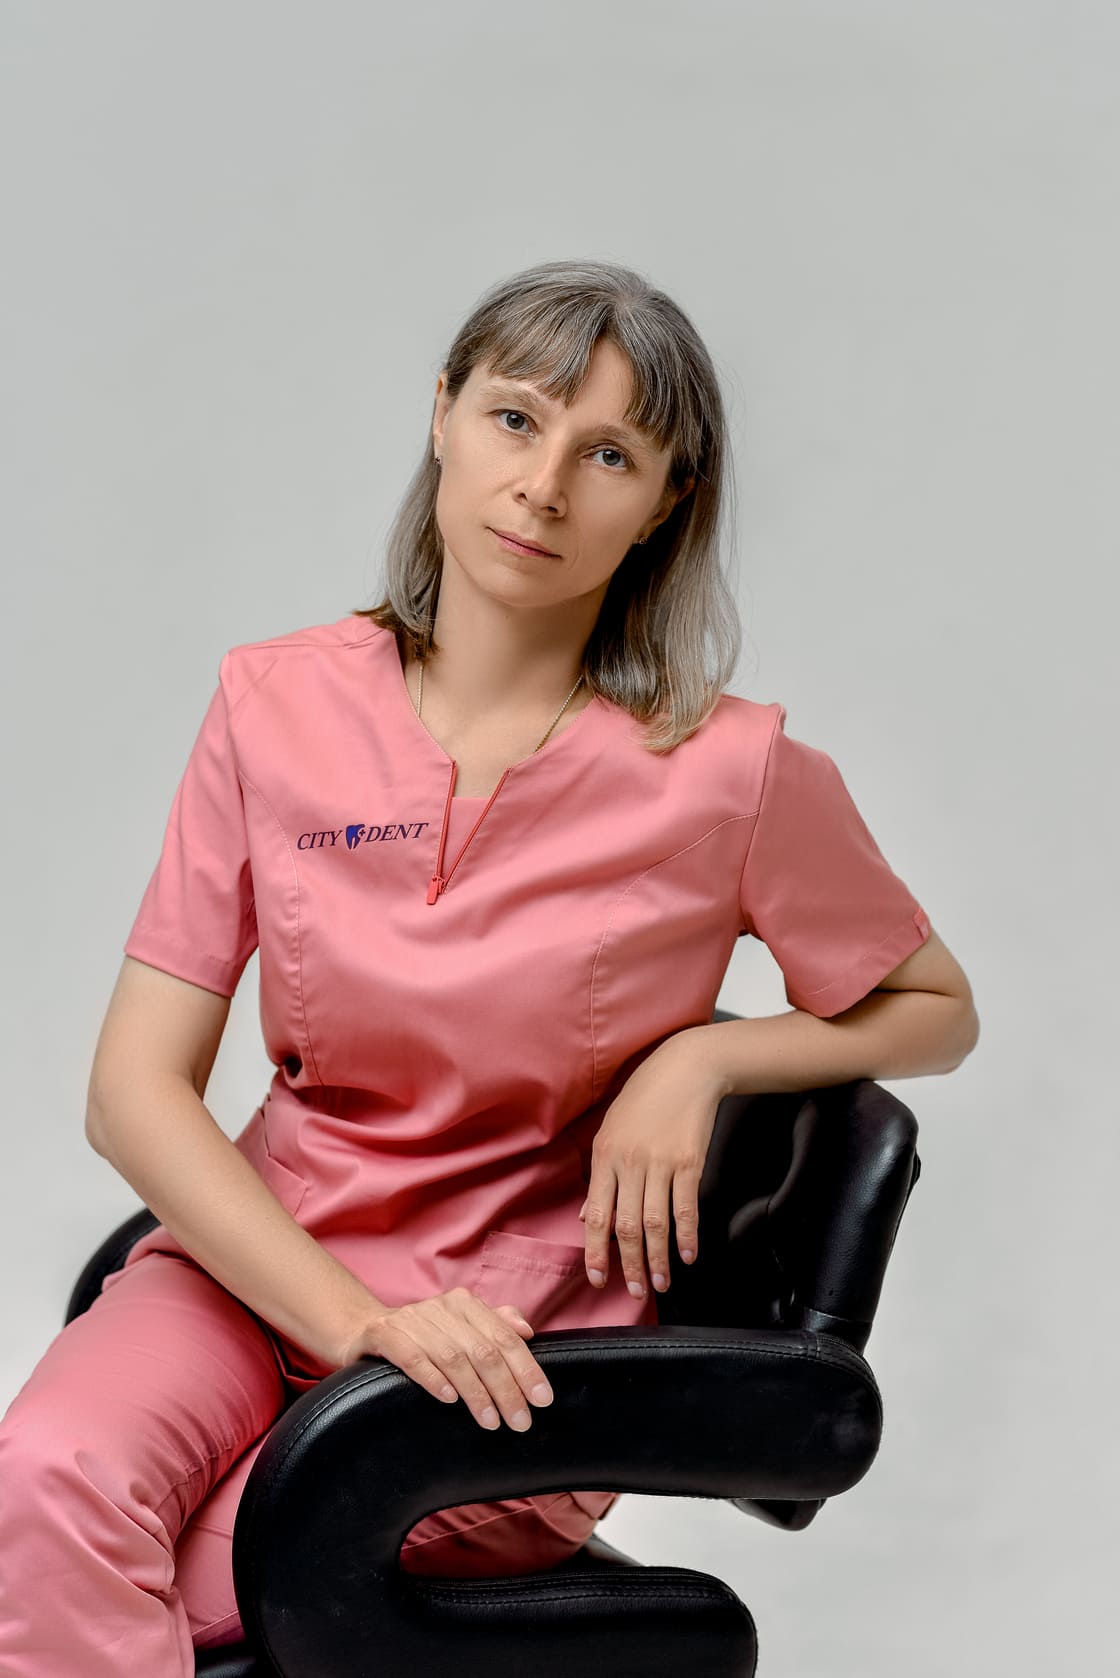 Специалист клиники Ситидент в области удаления зубов с применением новейших технологий Фокина Вера Николаевна